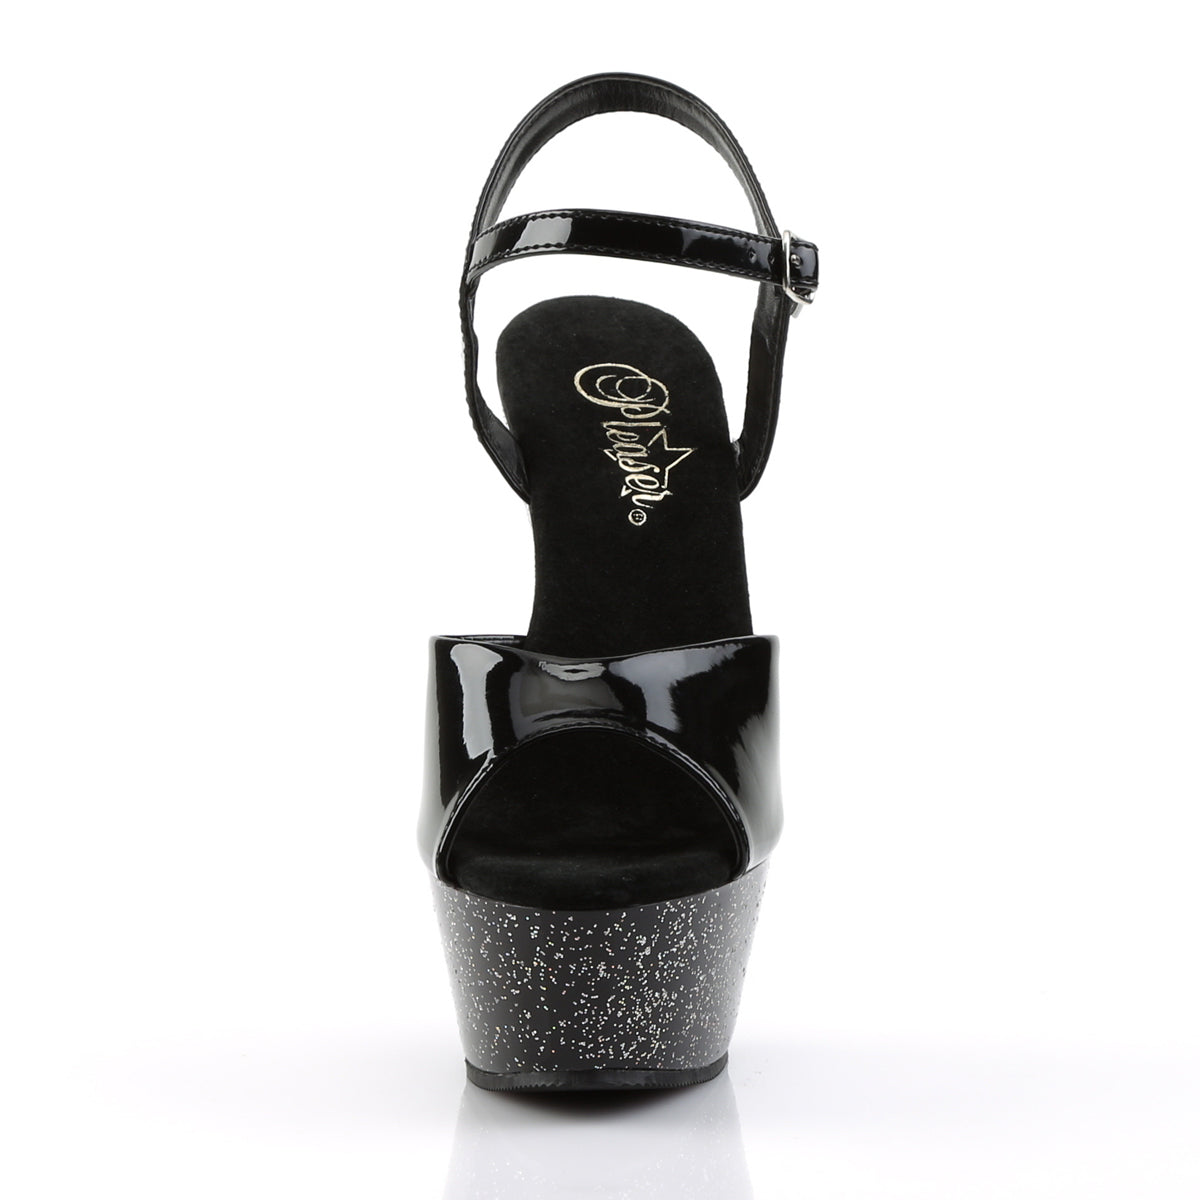 KISS-209MG Black Glitter Platform Sandals